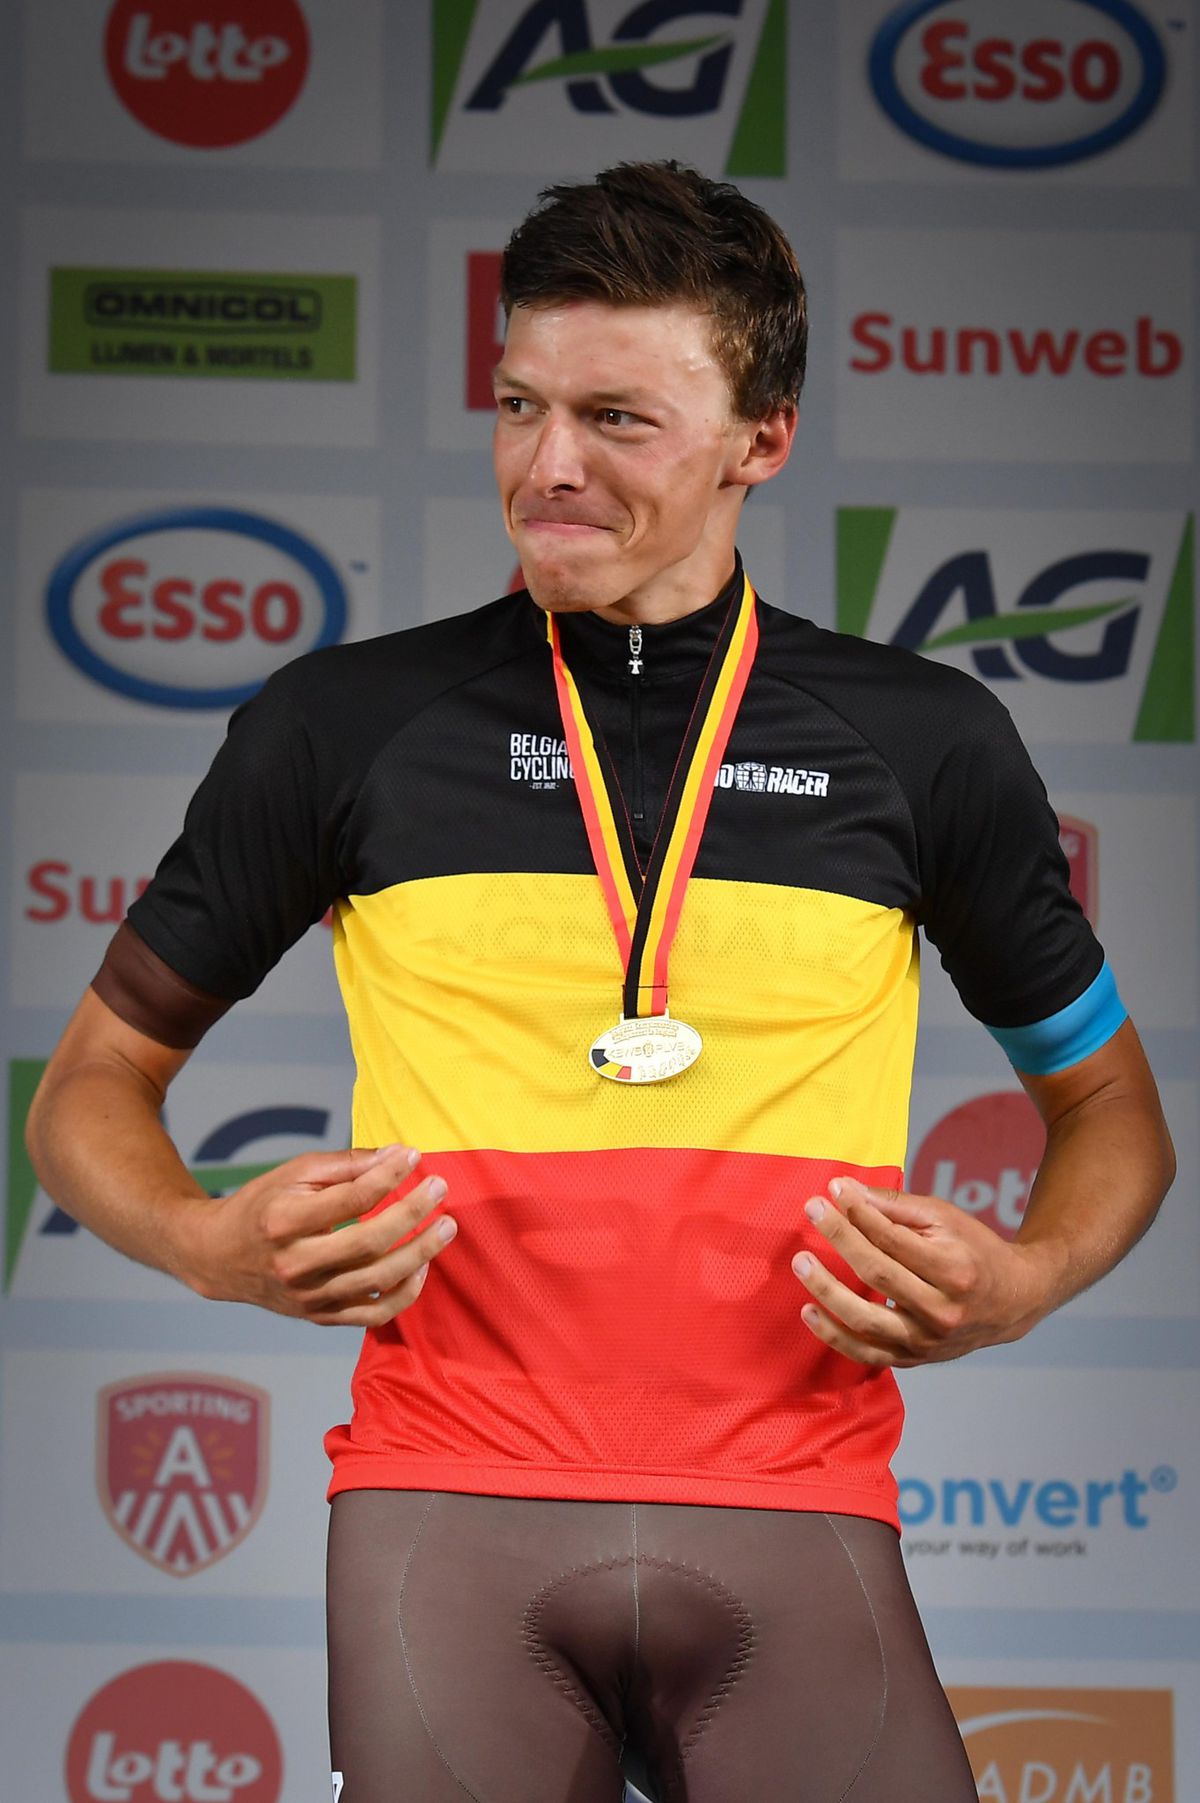 Belgisch kampioen wielrennen pakt uit: ook een rood-zwart-gele fiets